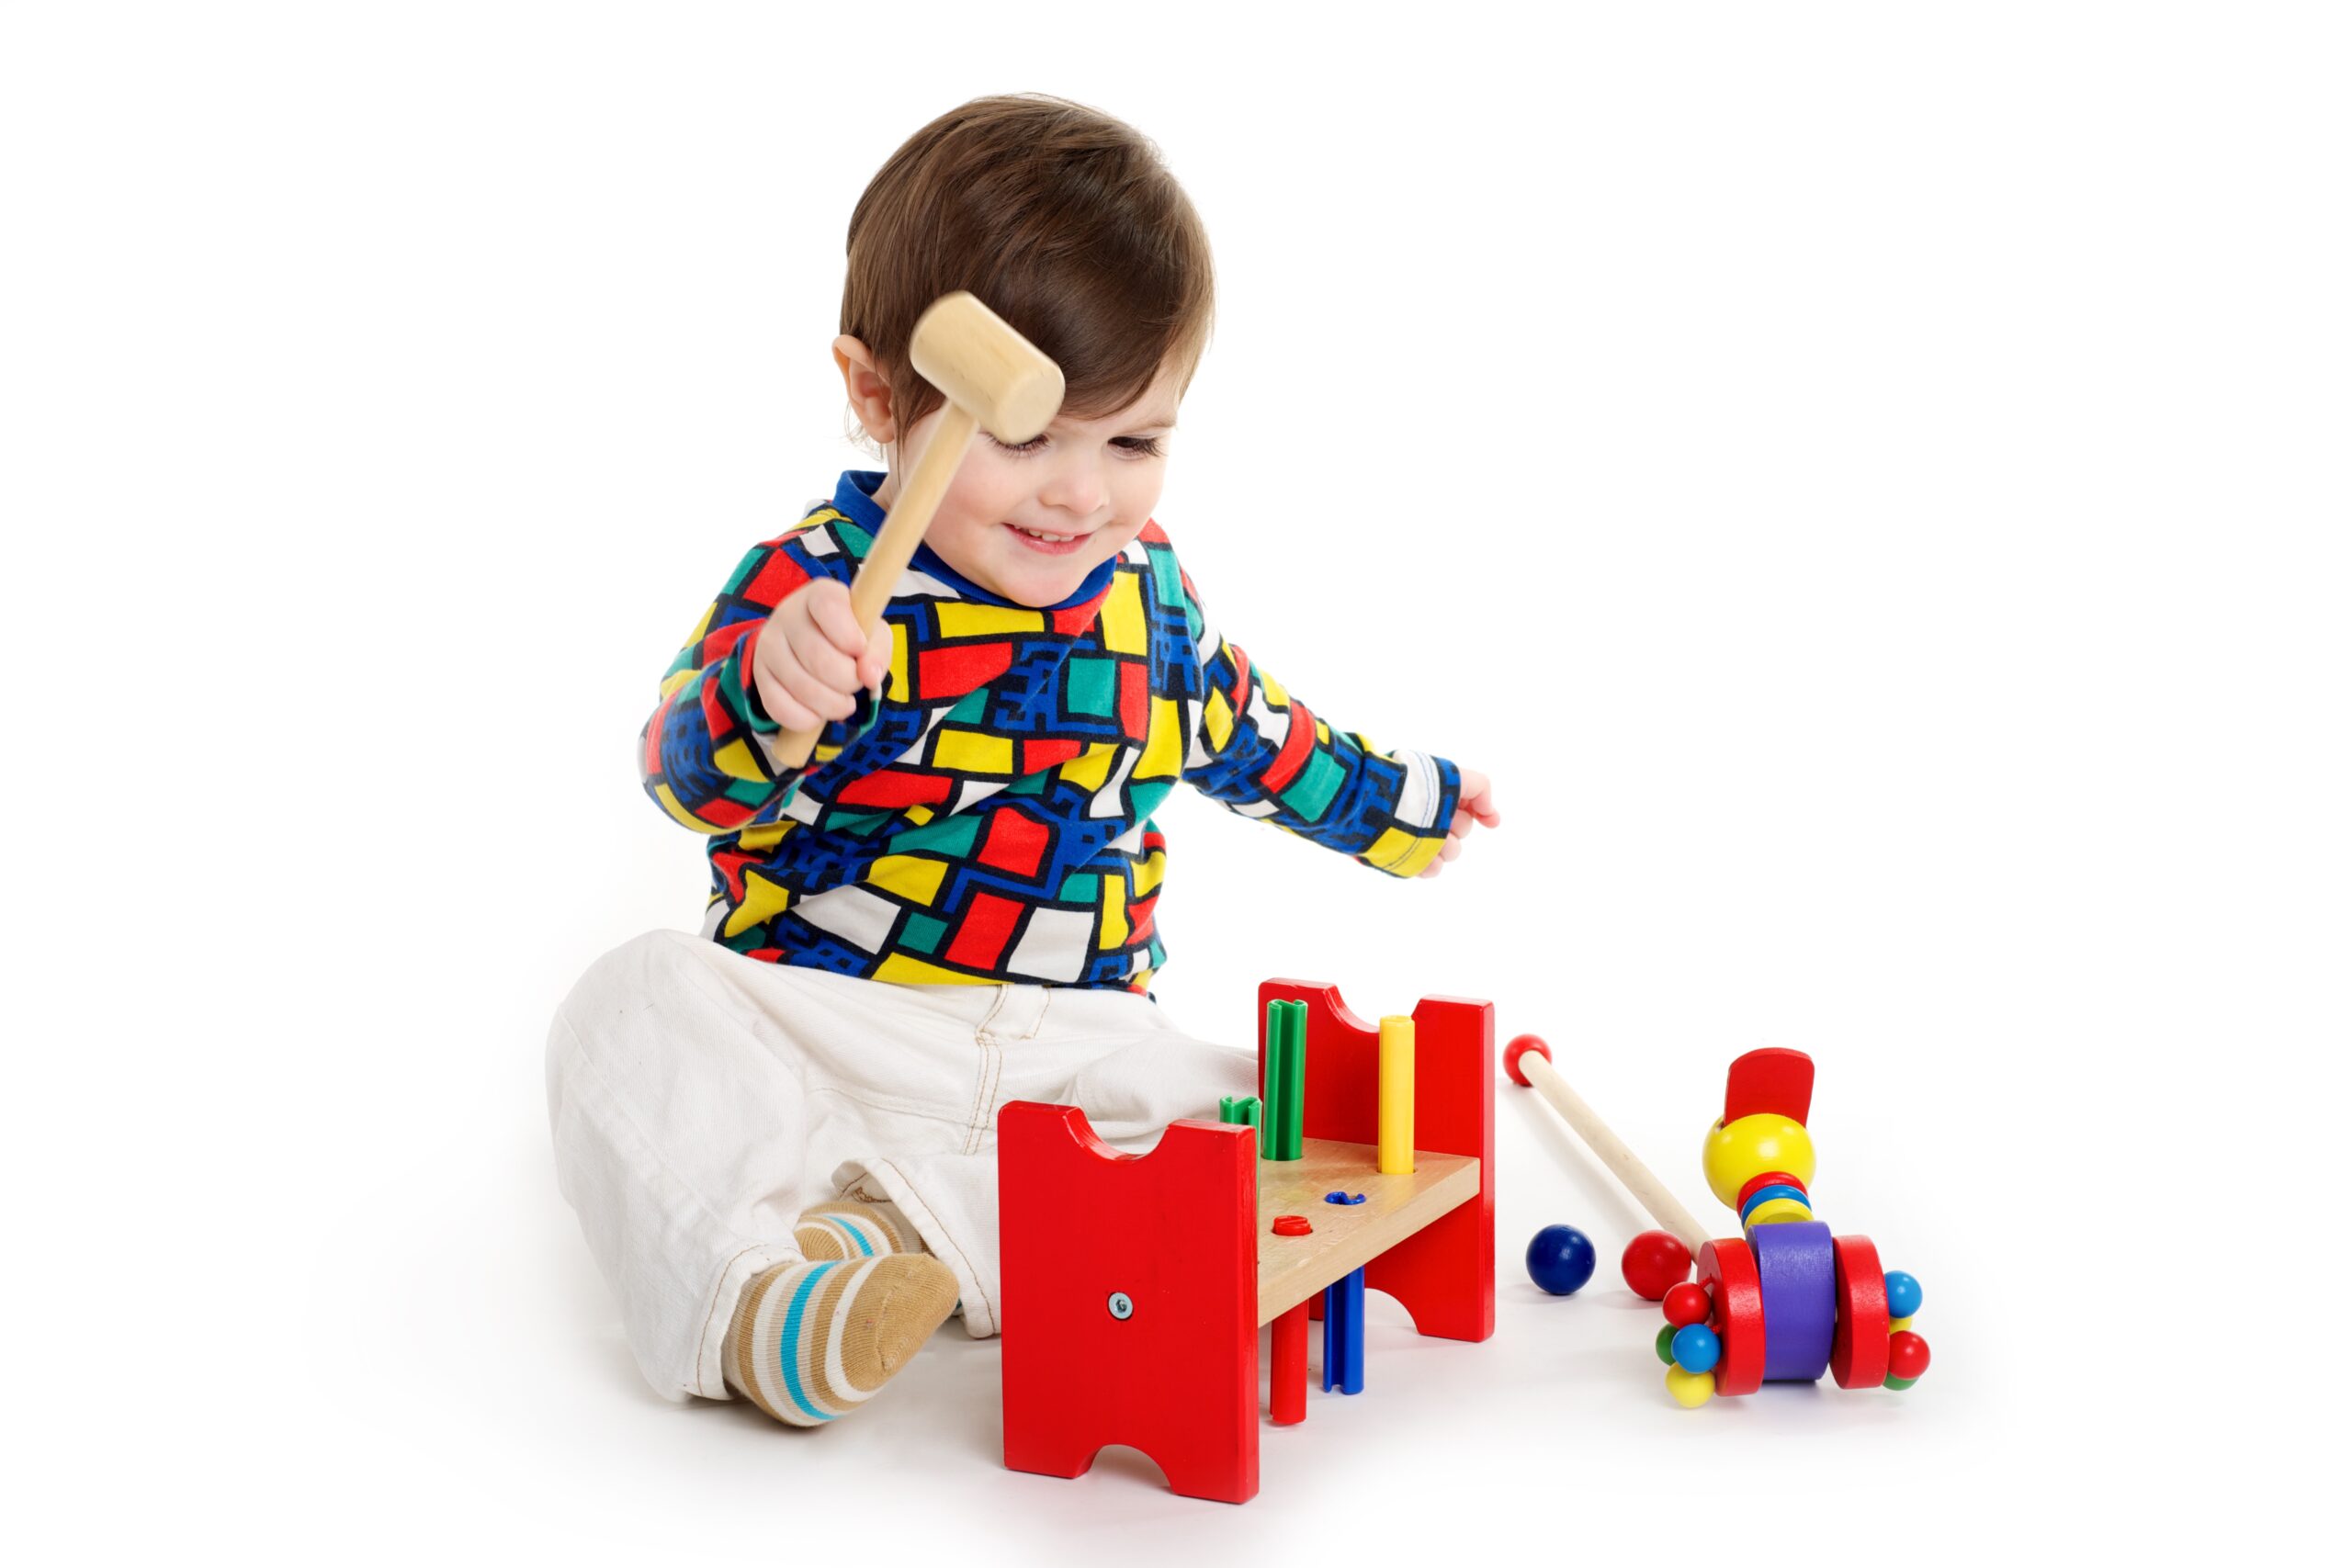 Puzzle à habiller - Garçon et fille en coffret bois - Matériel Montessori